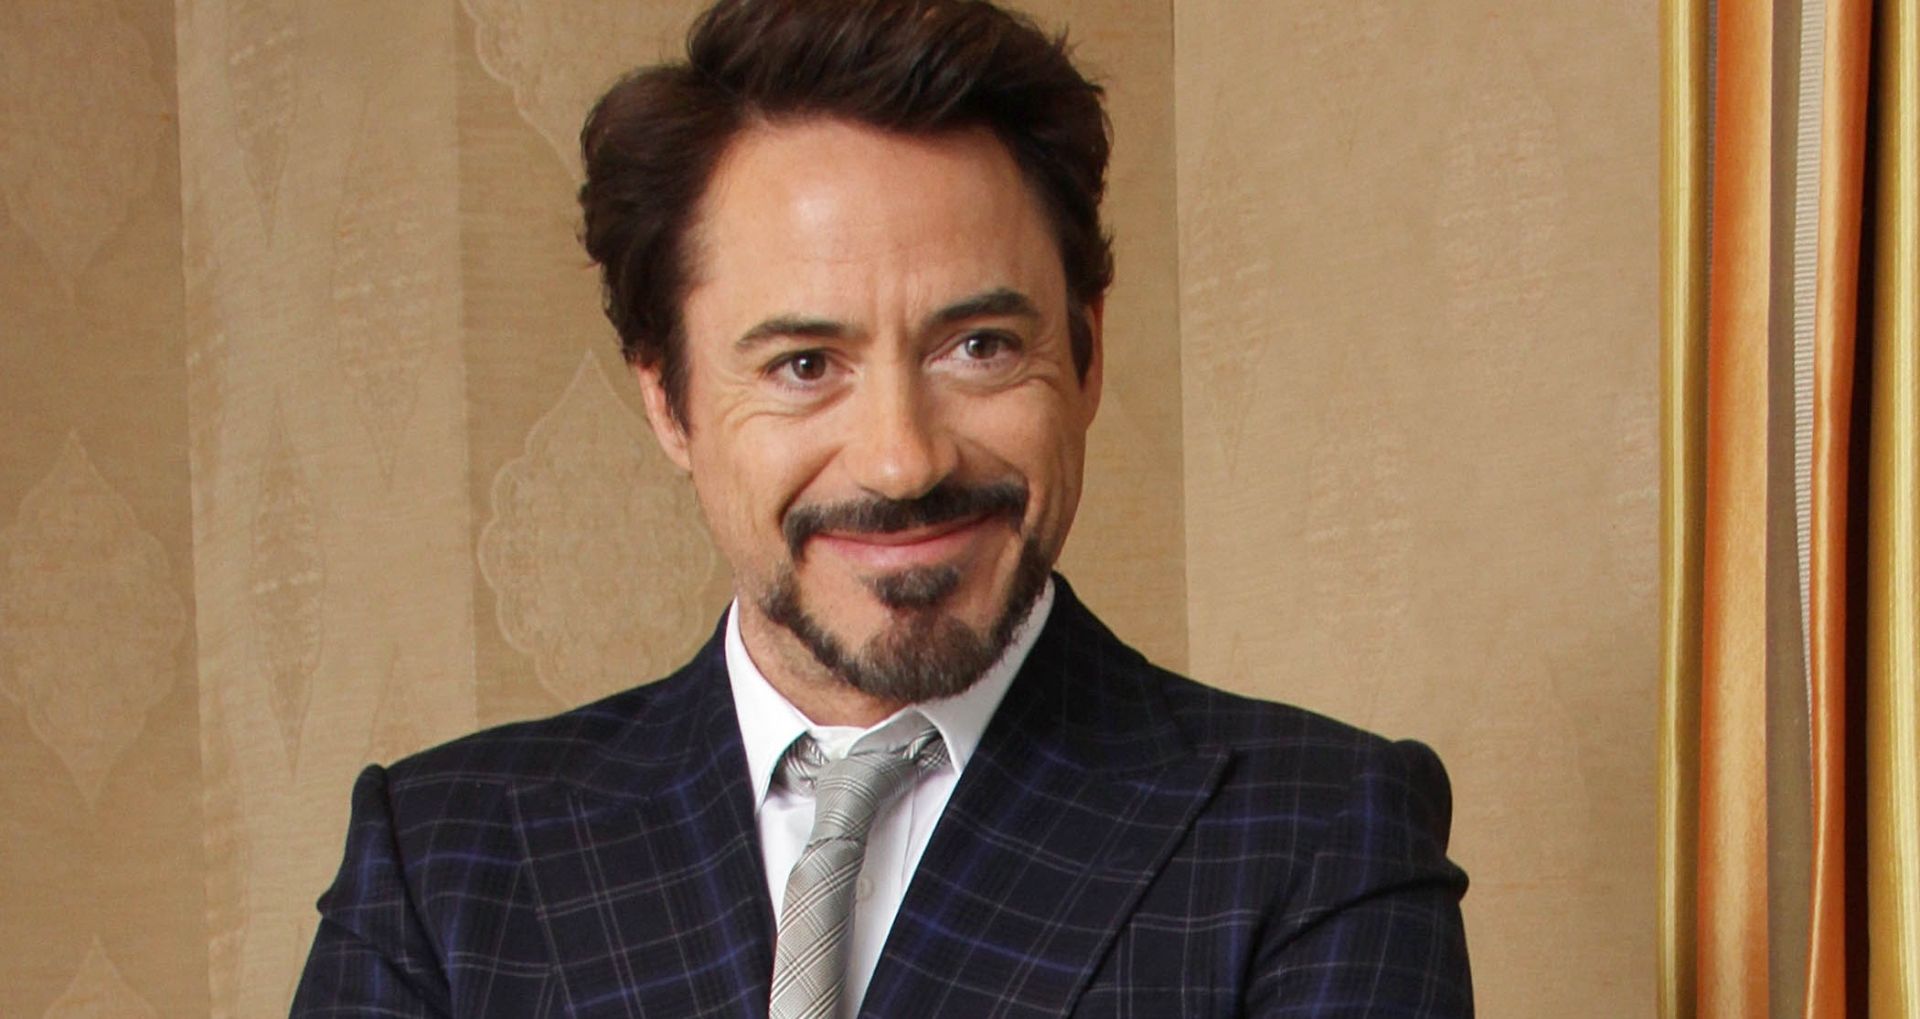 Még mindig Robert Downey Jr. a legfizetettebb színész